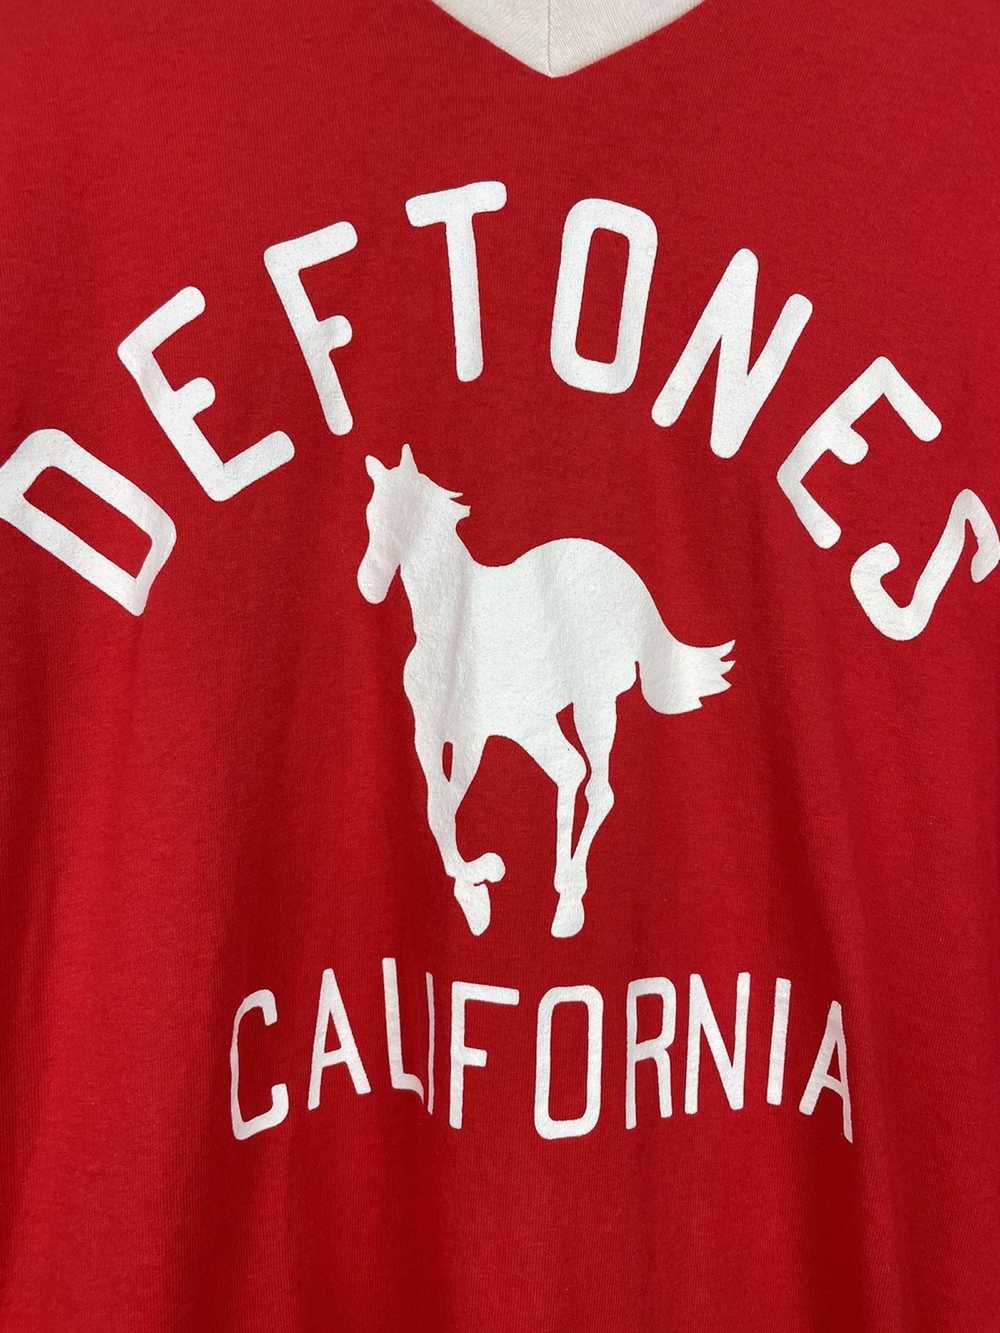 Band Tees Deftones rock band t shirt - image 4